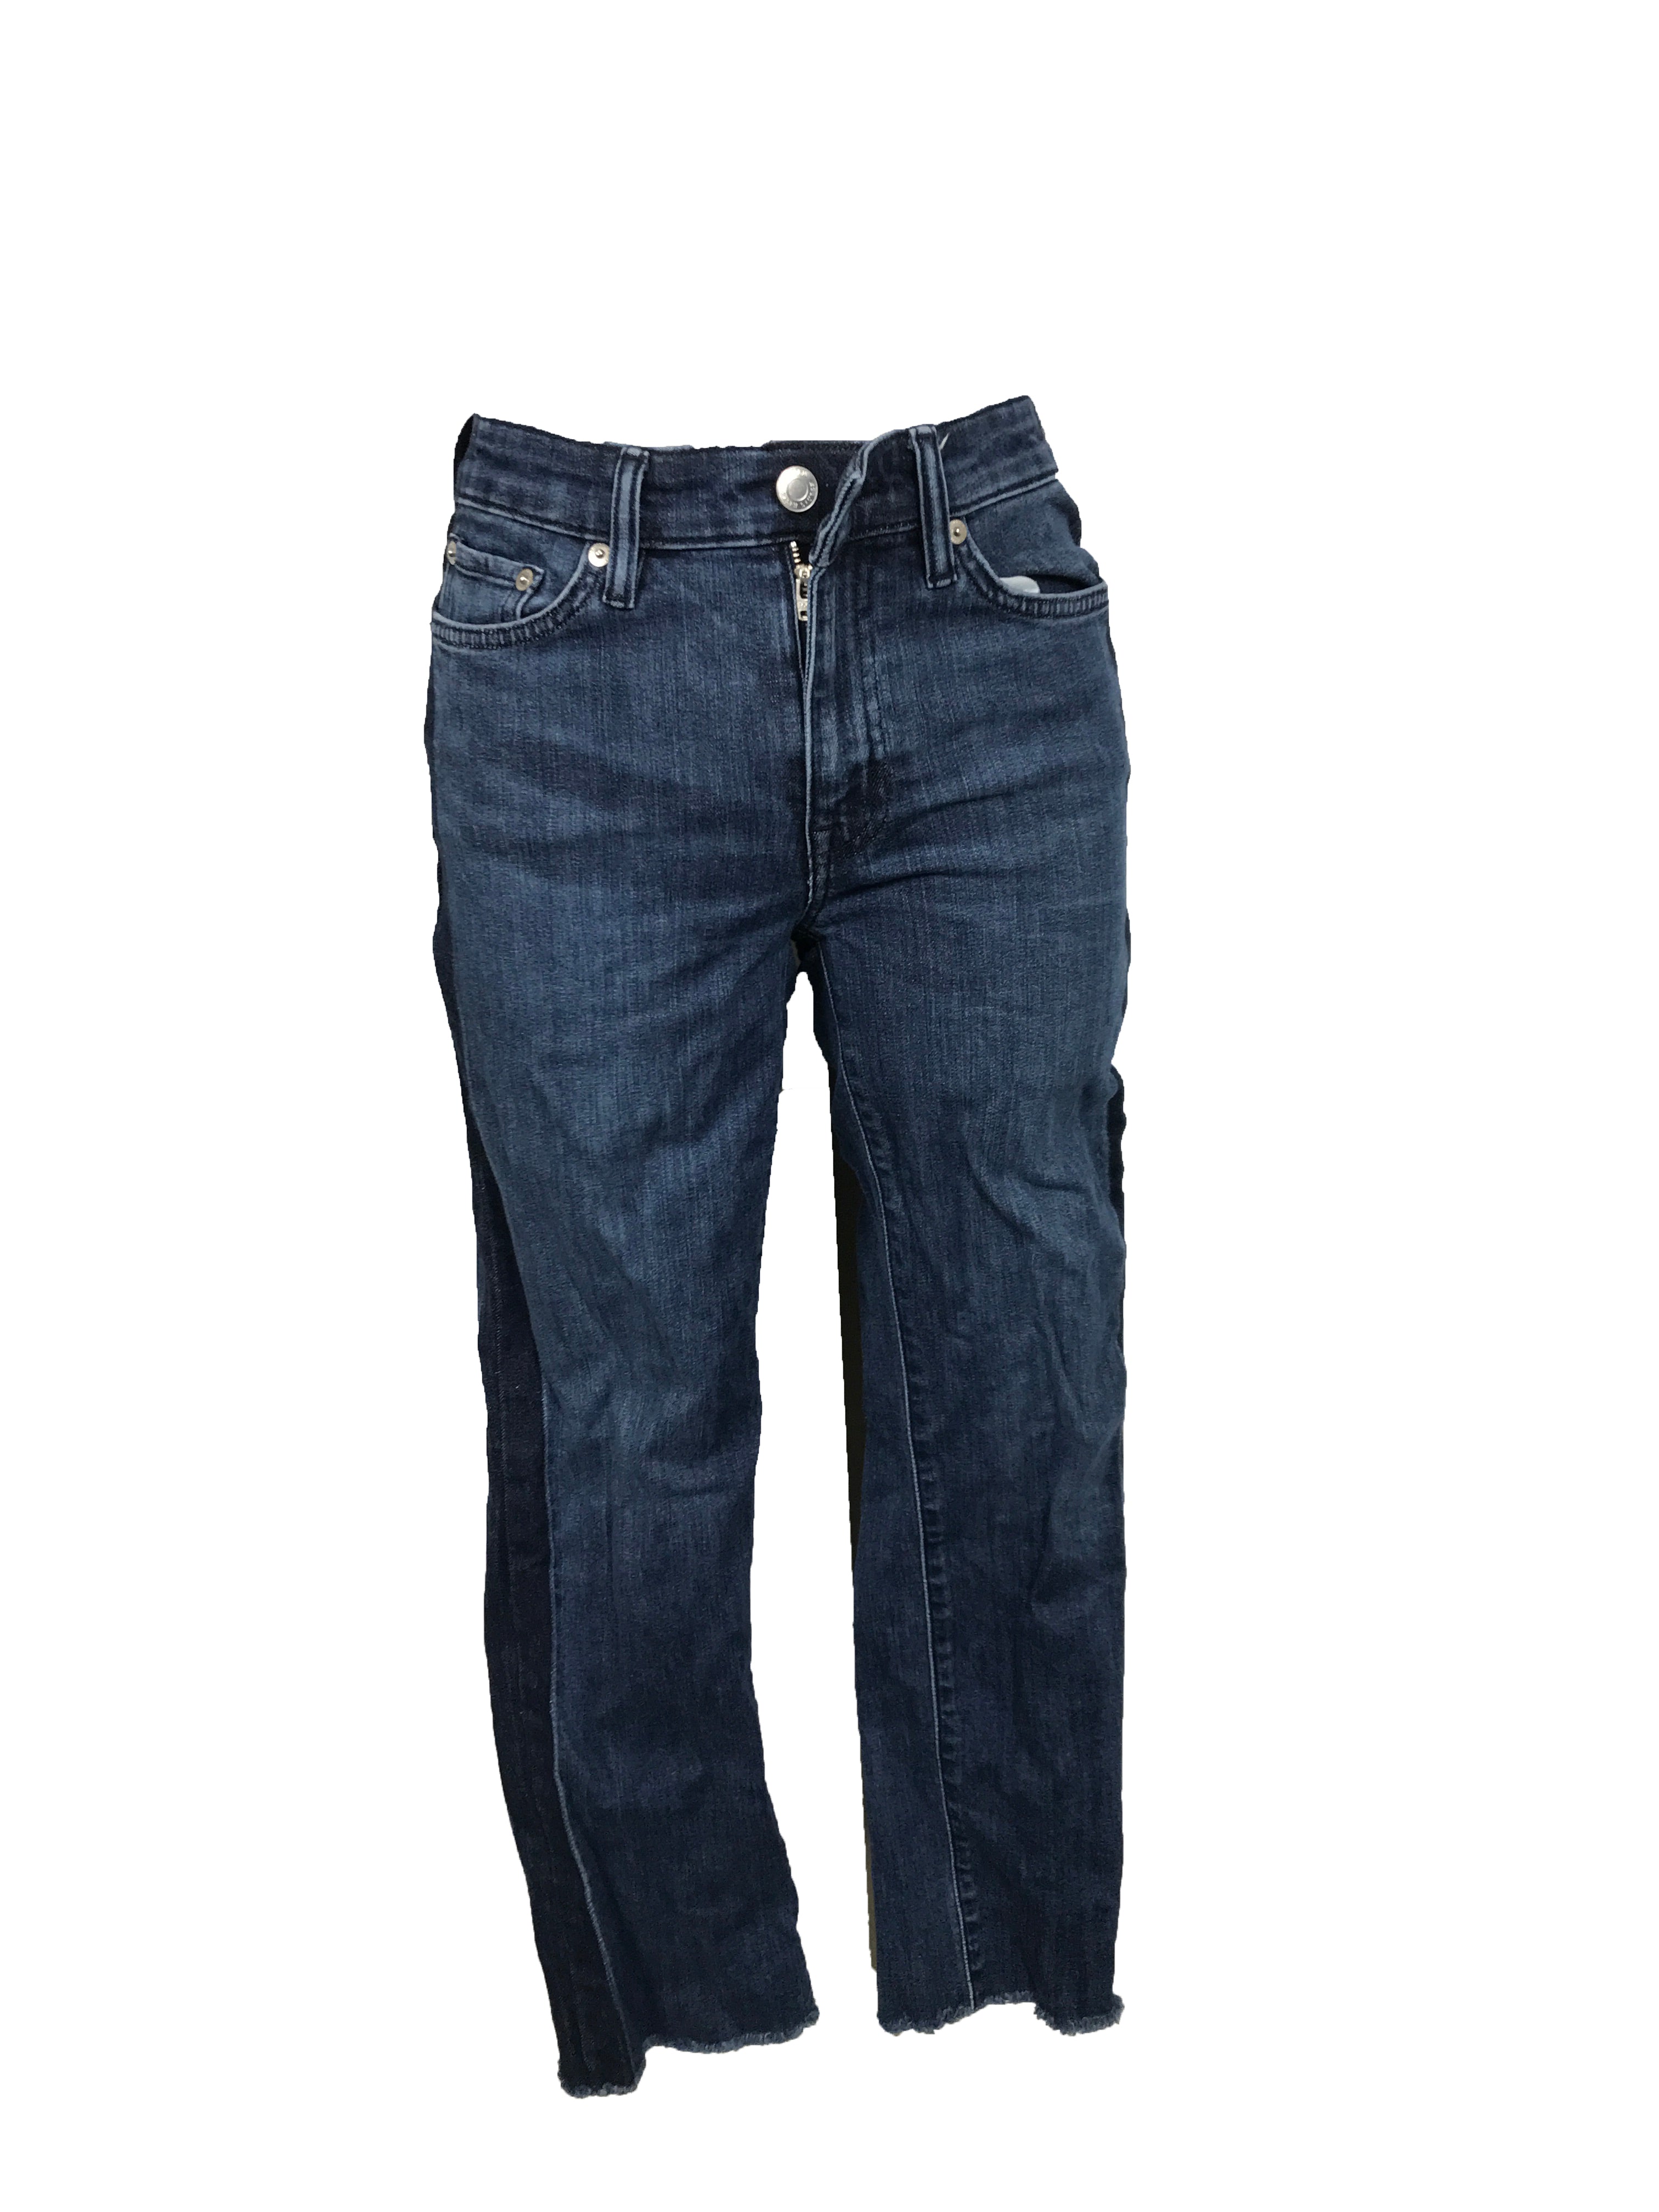 Ralph Lauren Dark Wash Jeans Women's Size 2